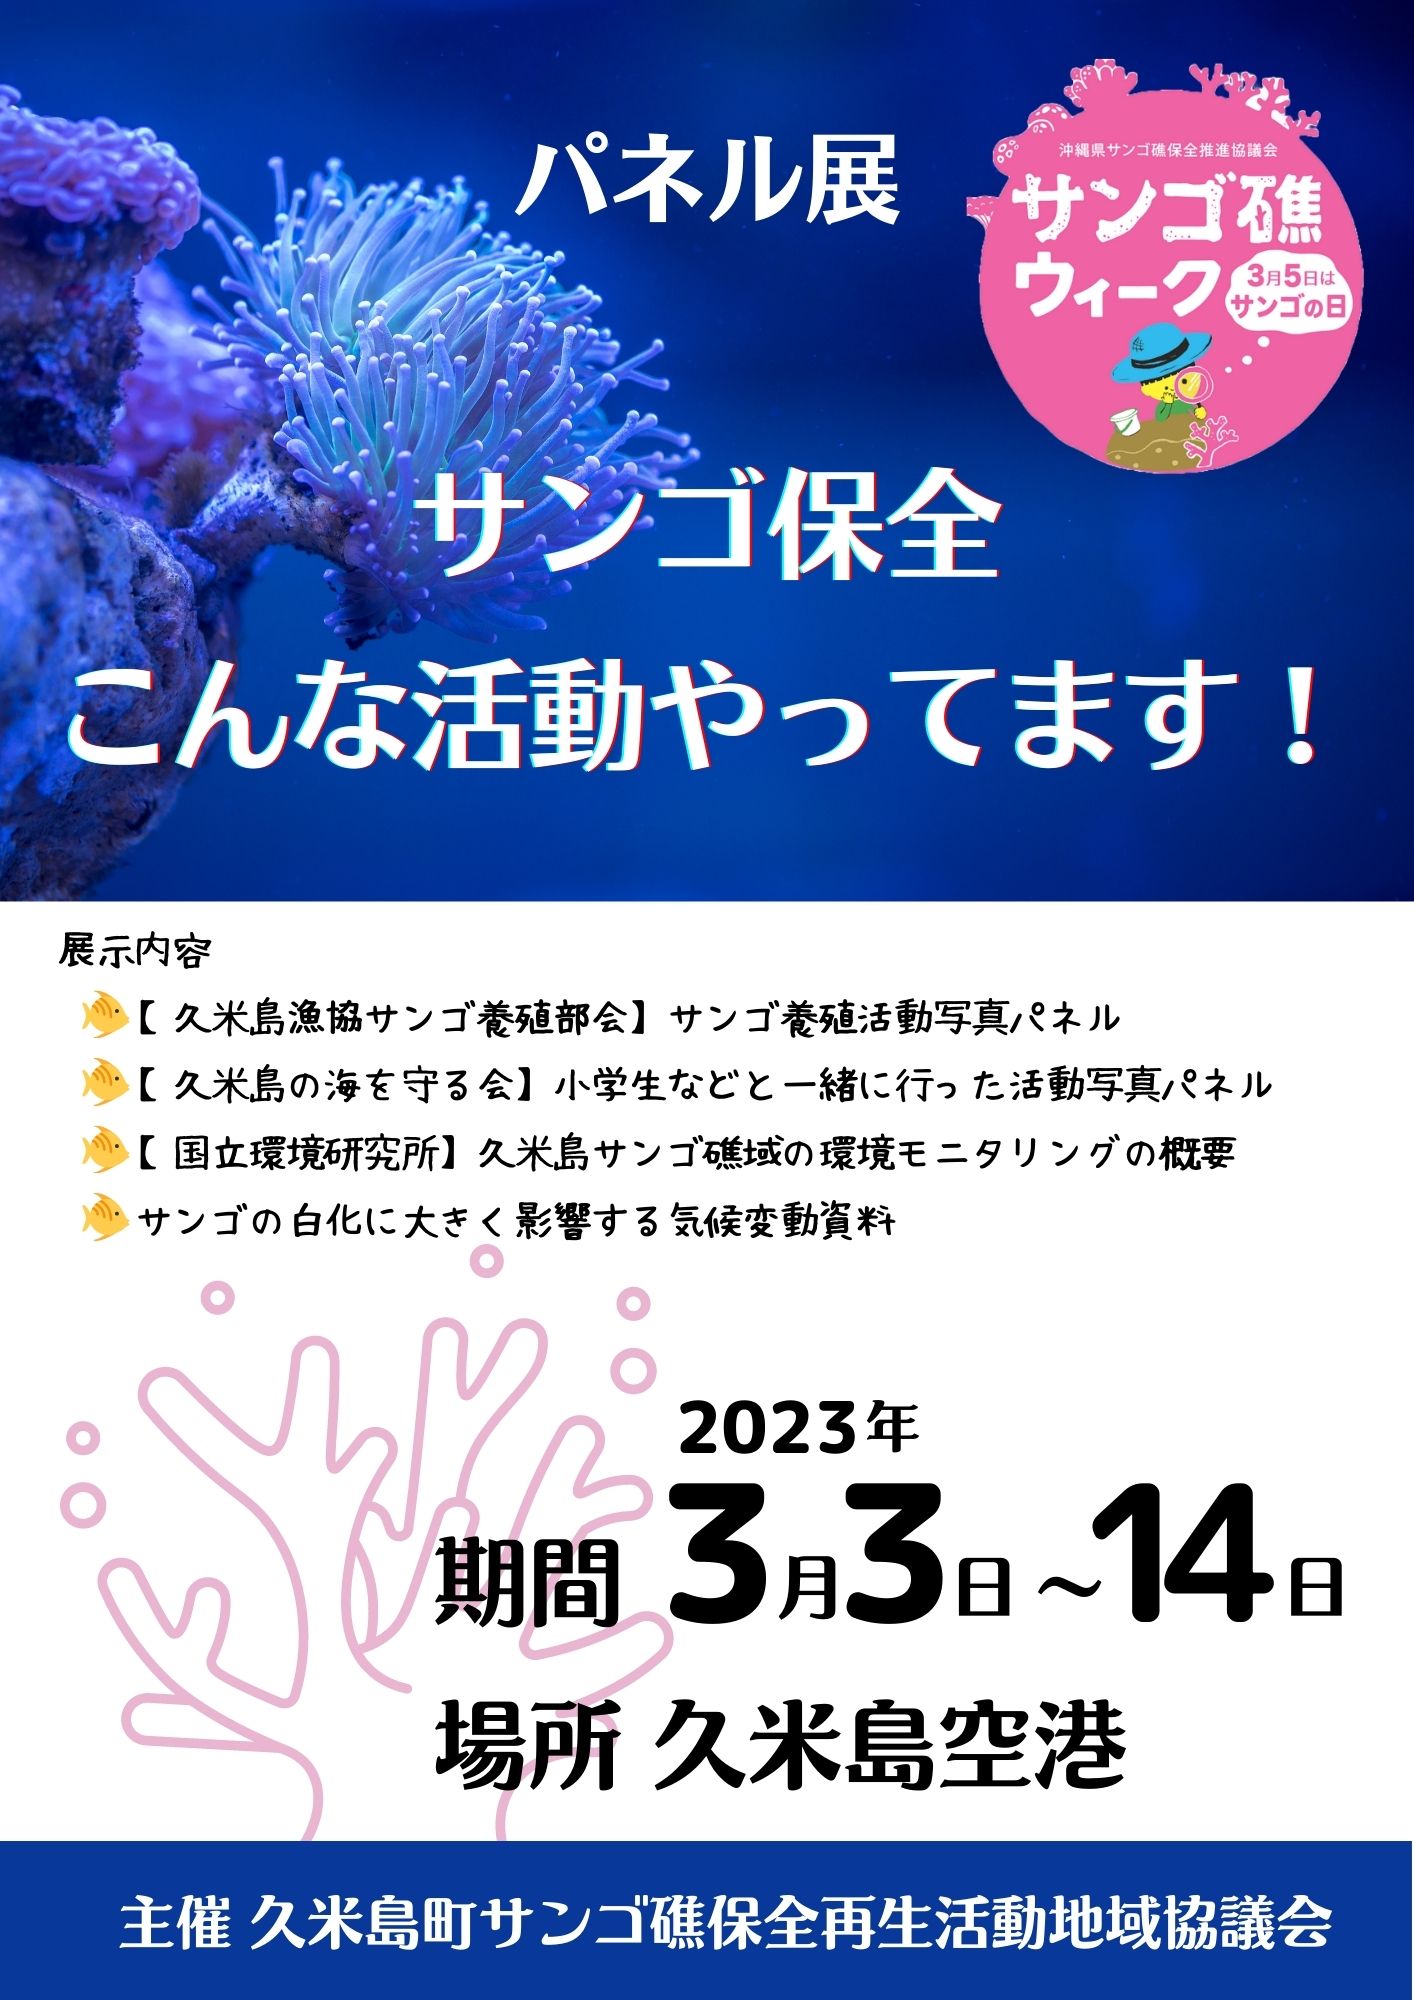 サンゴ保全パネル展 (1)